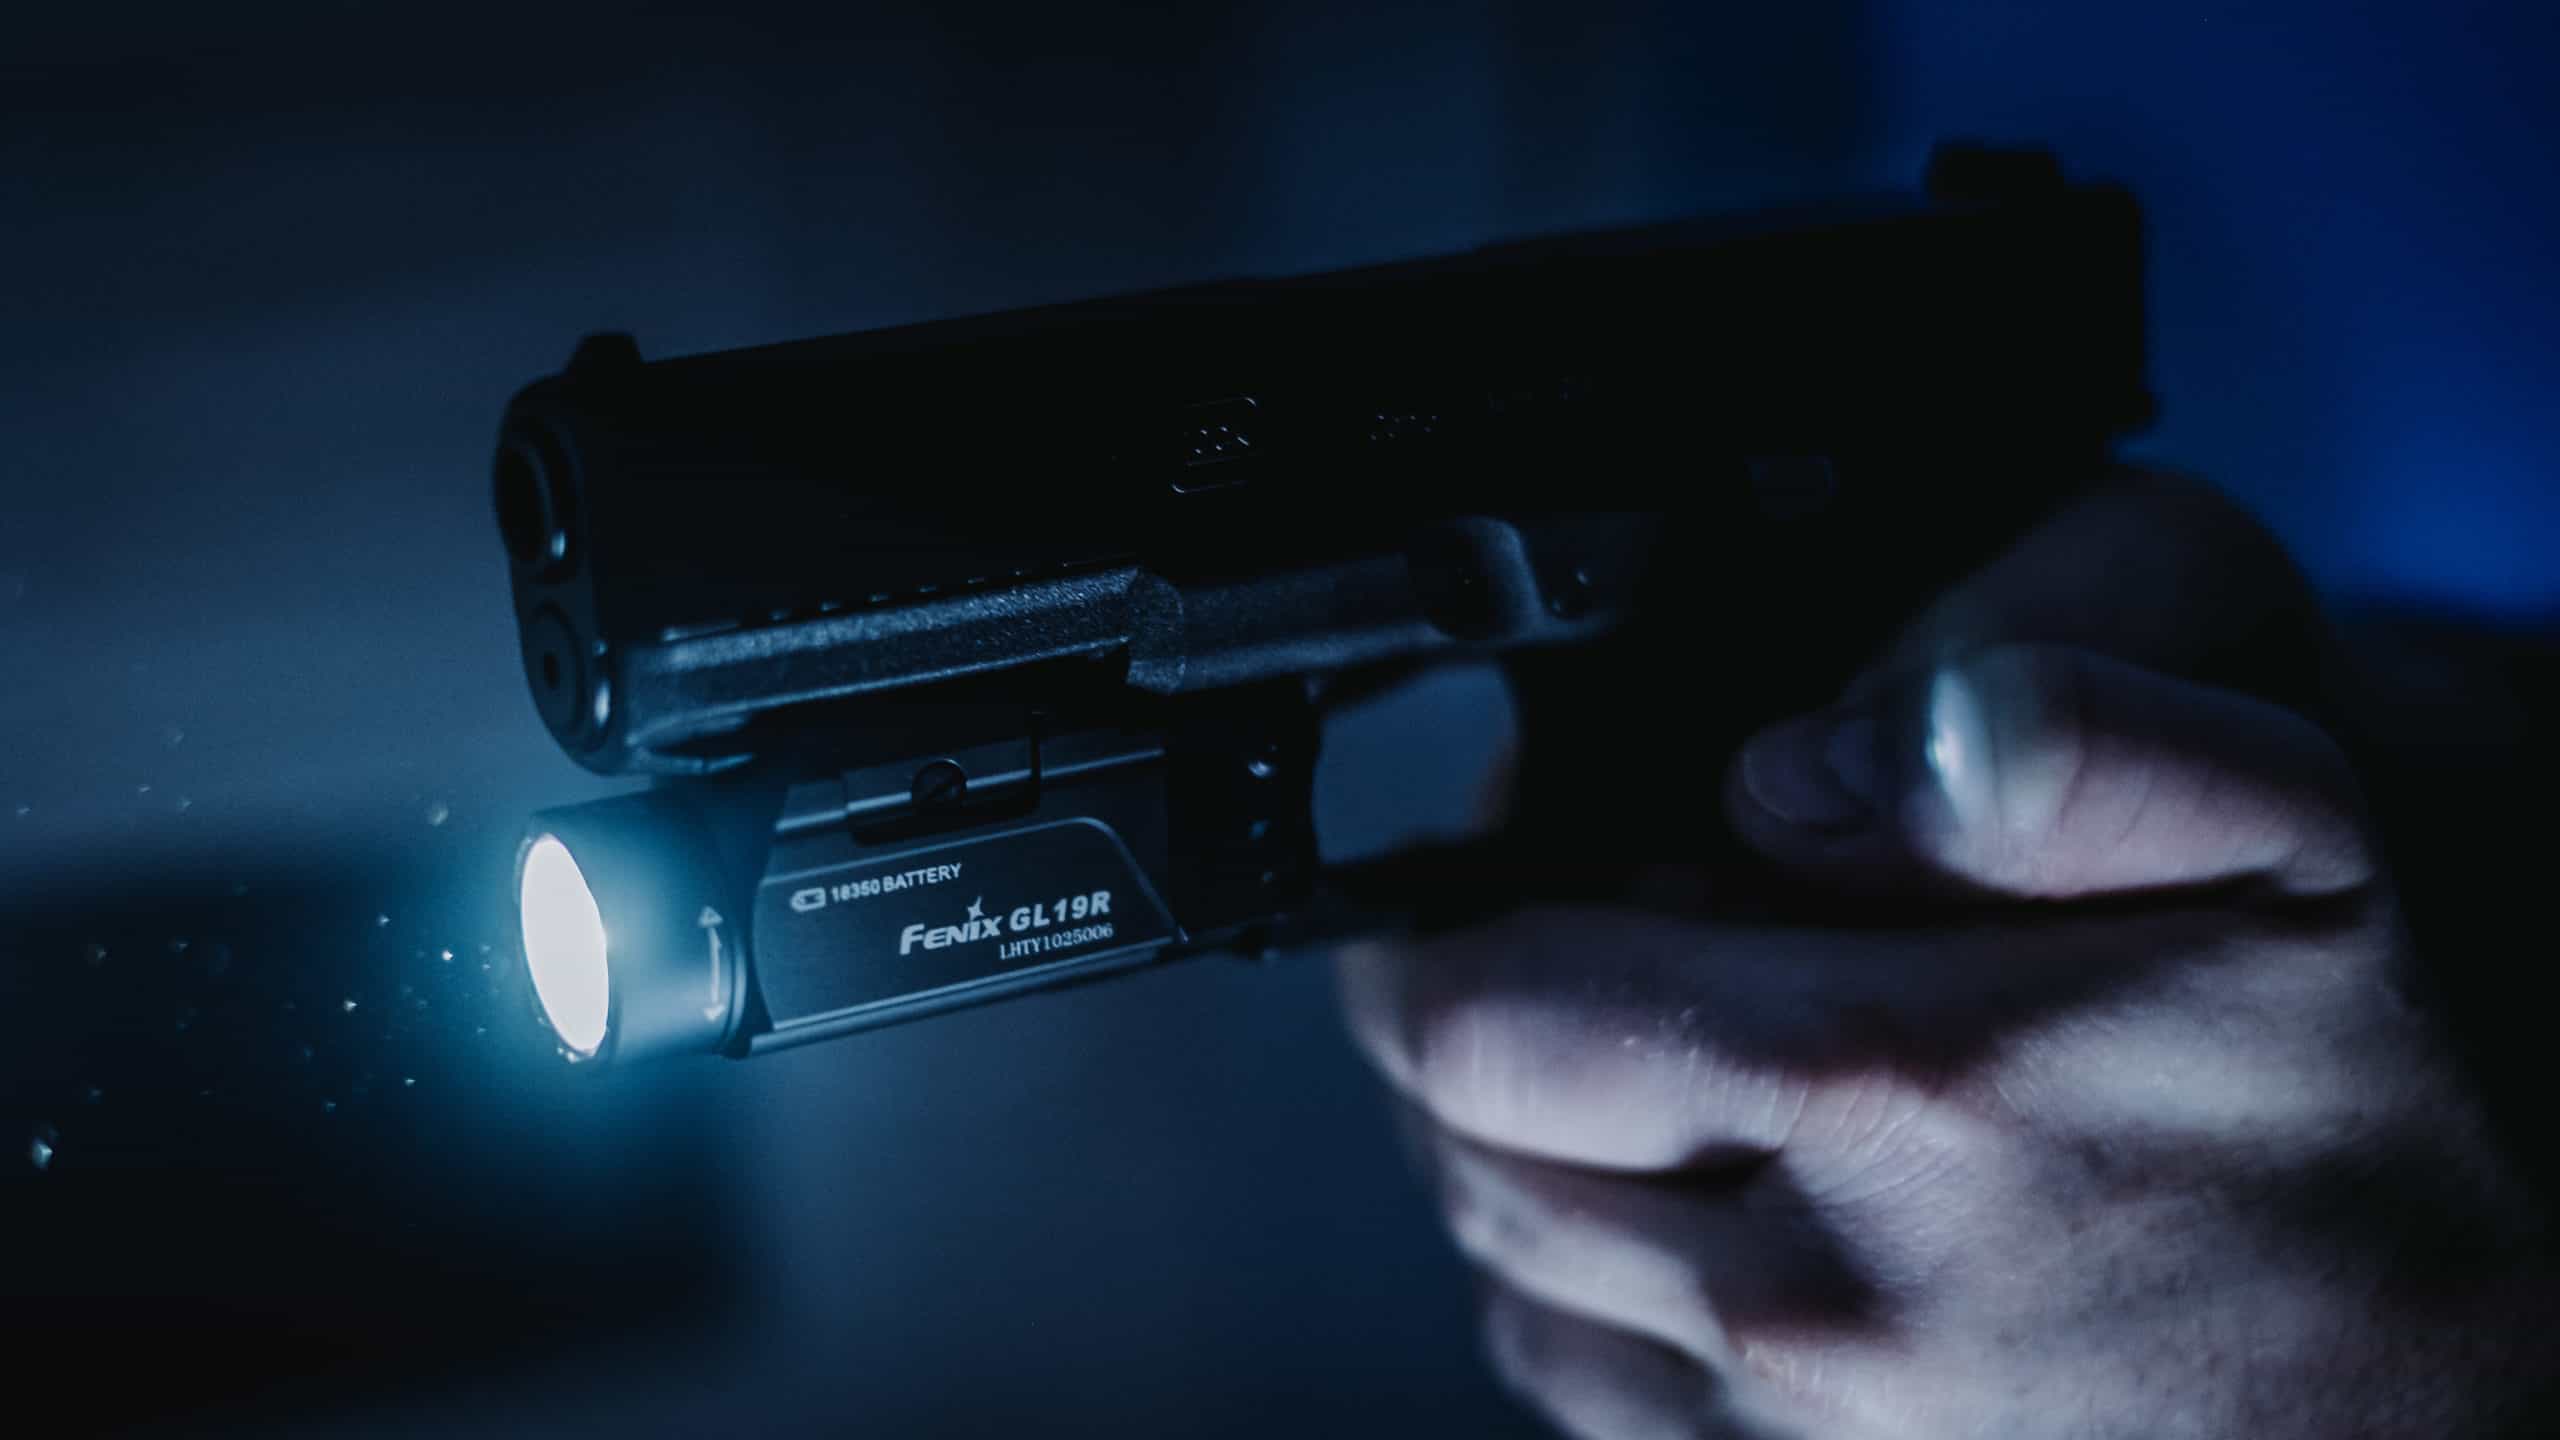 Fenix GL19R pistol light in use